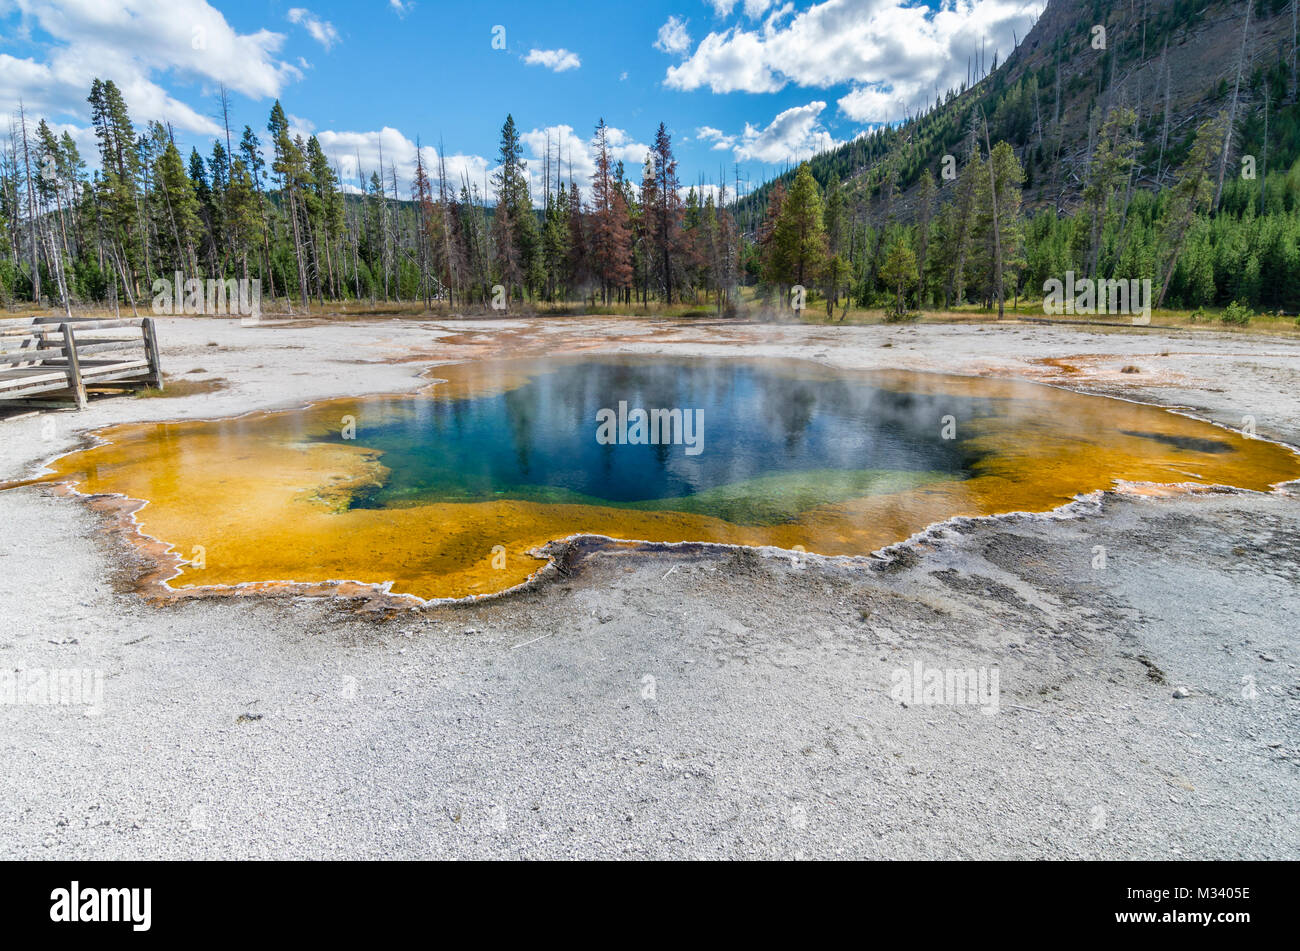 Emerald Pool in schwarzen Sand Basin ist ein auffällig gefärbten thermische Funktion. Yellowstone National Park, Wyoming, USA Stockfoto